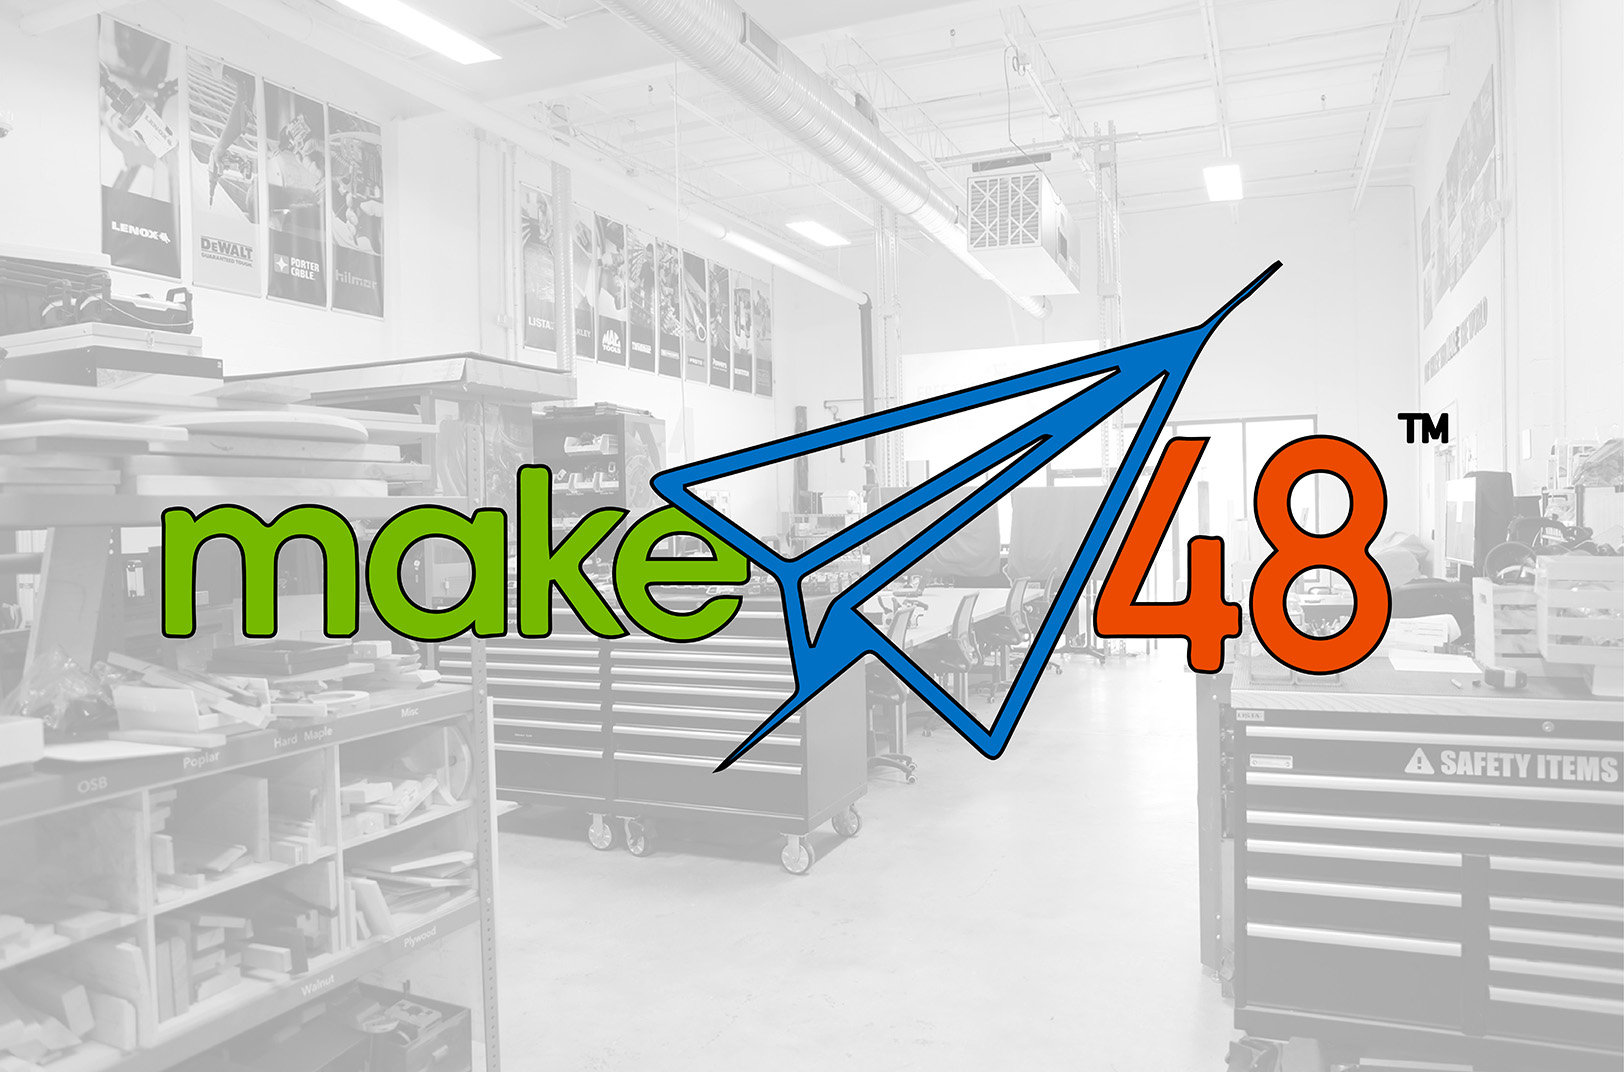 KC-based Make48 team films Season 3 at Baltimore makerspace